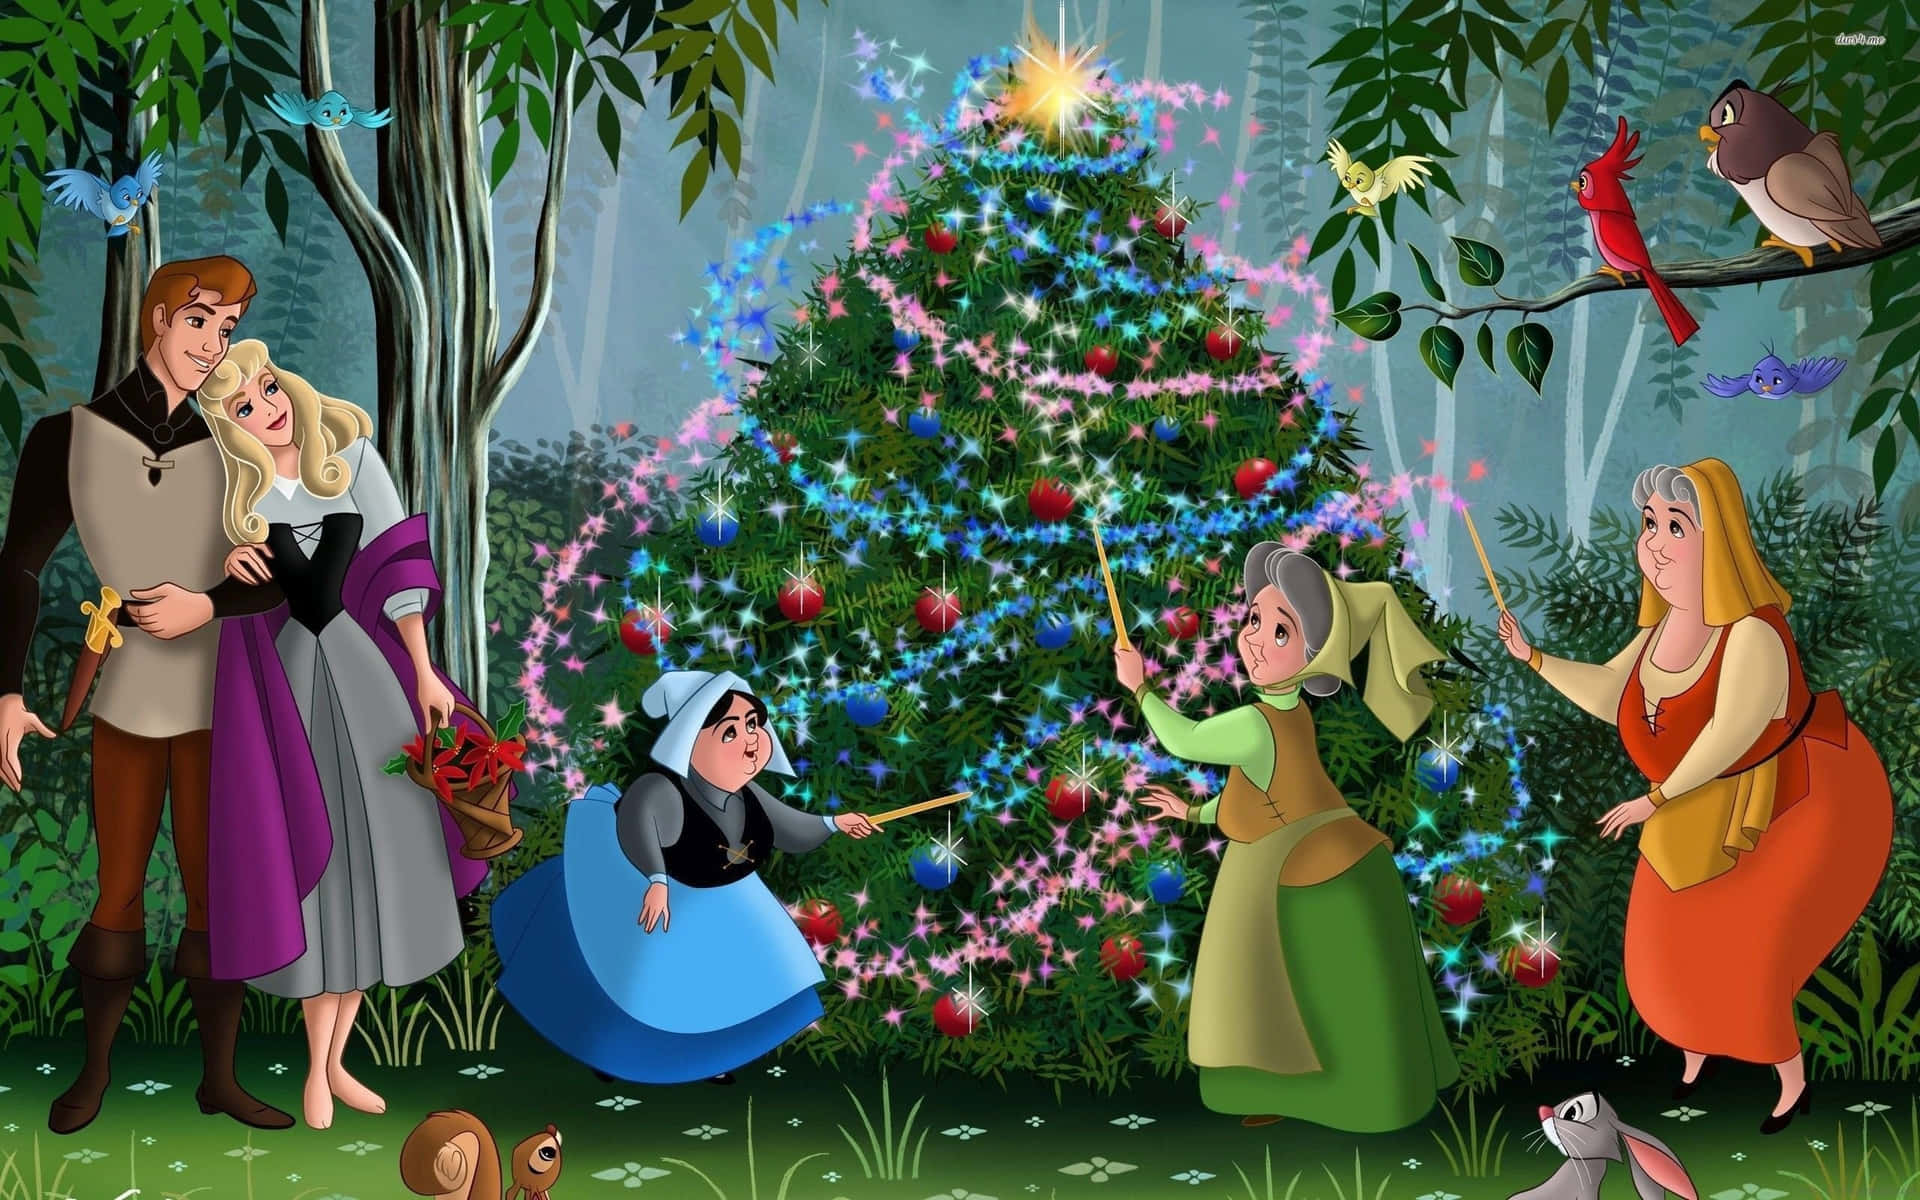 Comemorea Temporada De Férias Com Um Ipad De Natal Da Disney! Papel de Parede